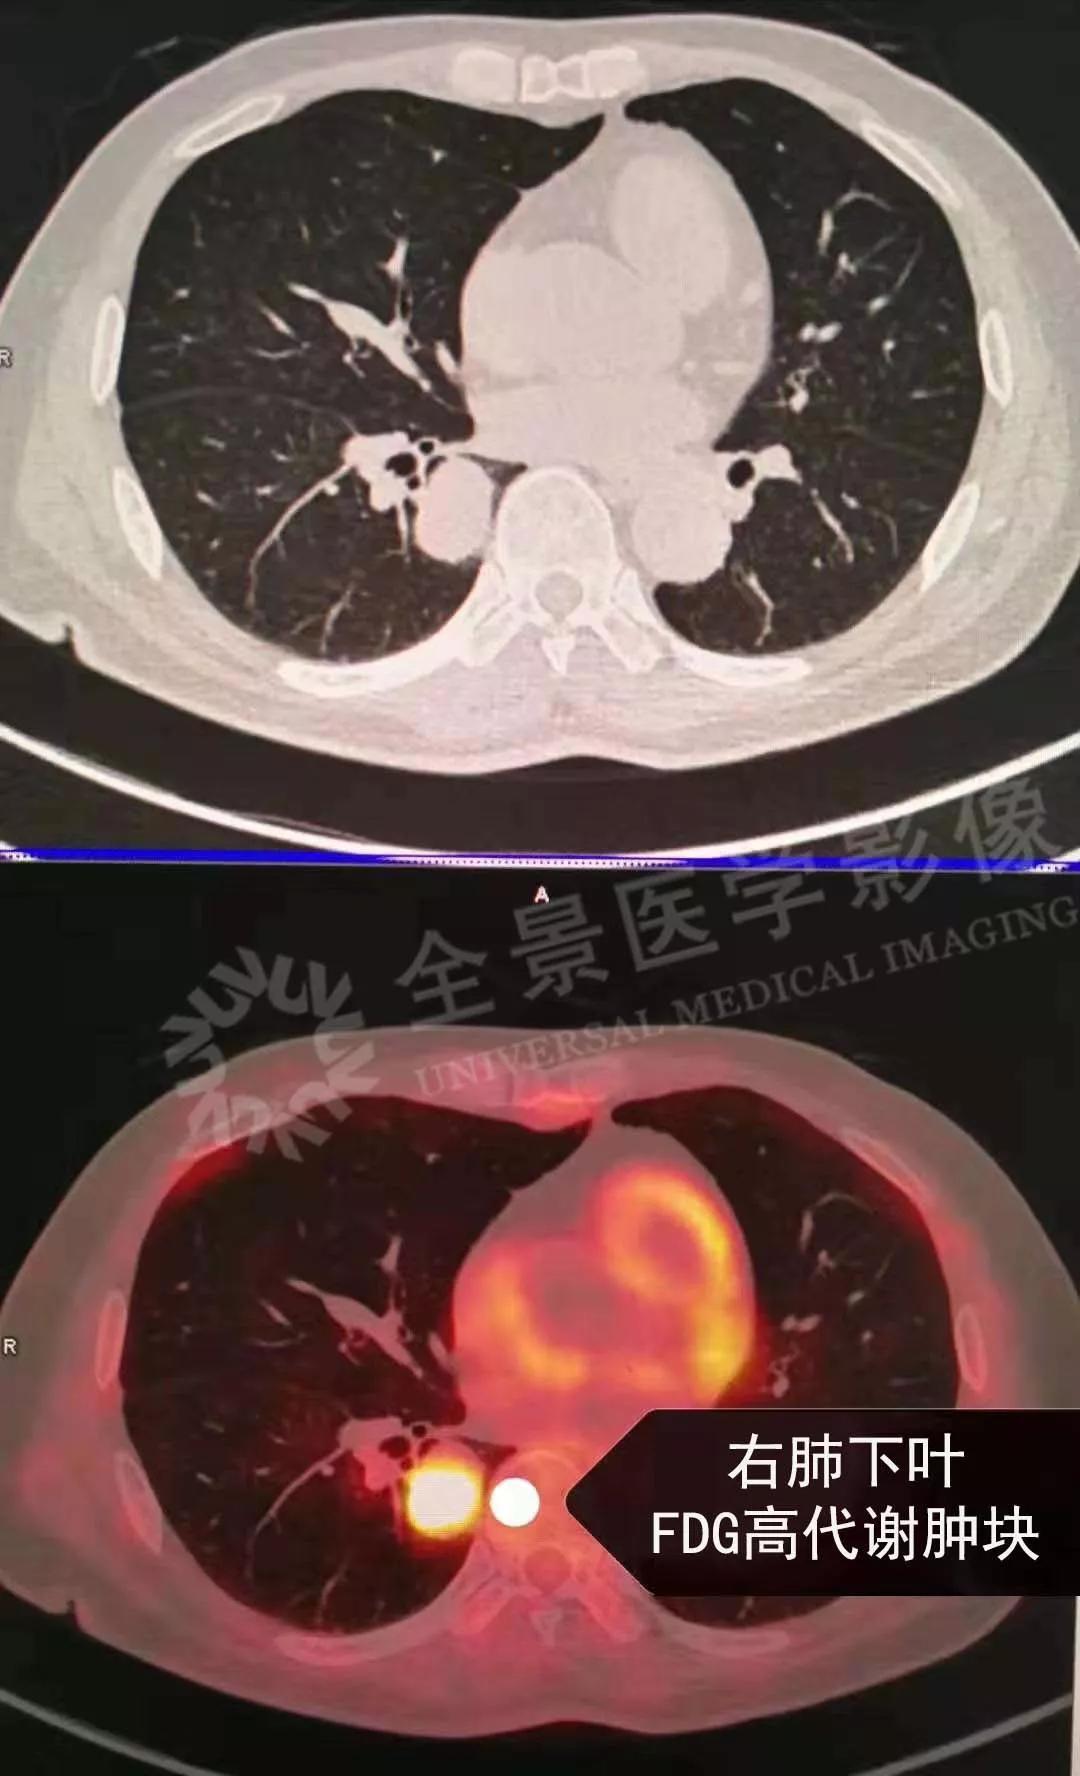 提示为恶性肿瘤,且右肺门发现增大淋巴结